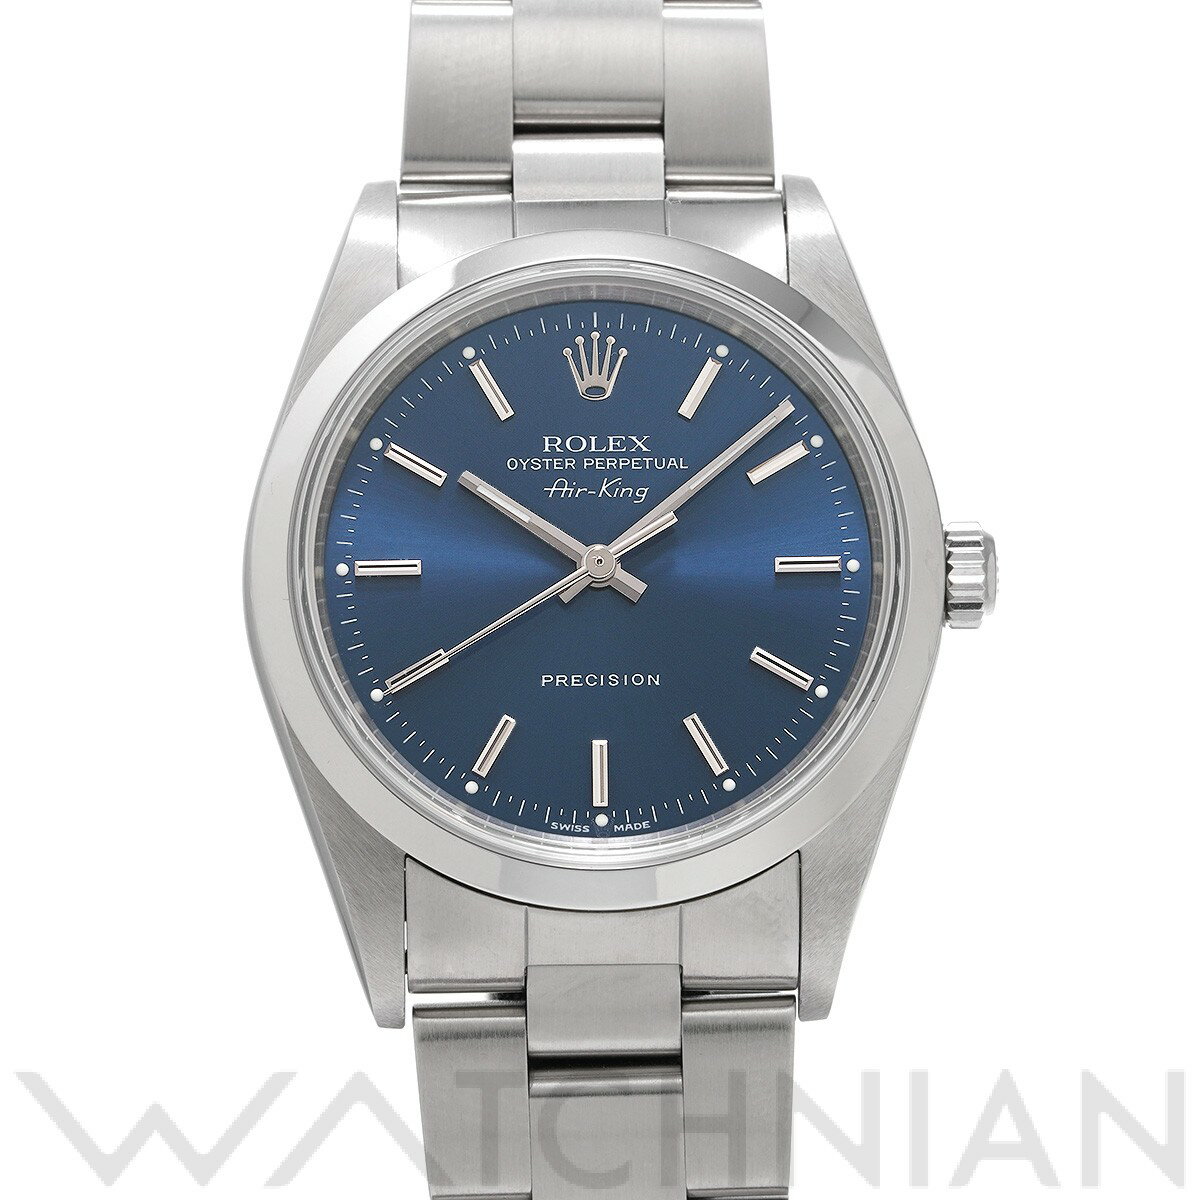 【ローン48回払い無金利】【中古】 ロレックス ROLEX エアキング 14000M K番(2001年頃製造) ブルー メンズ 腕時計